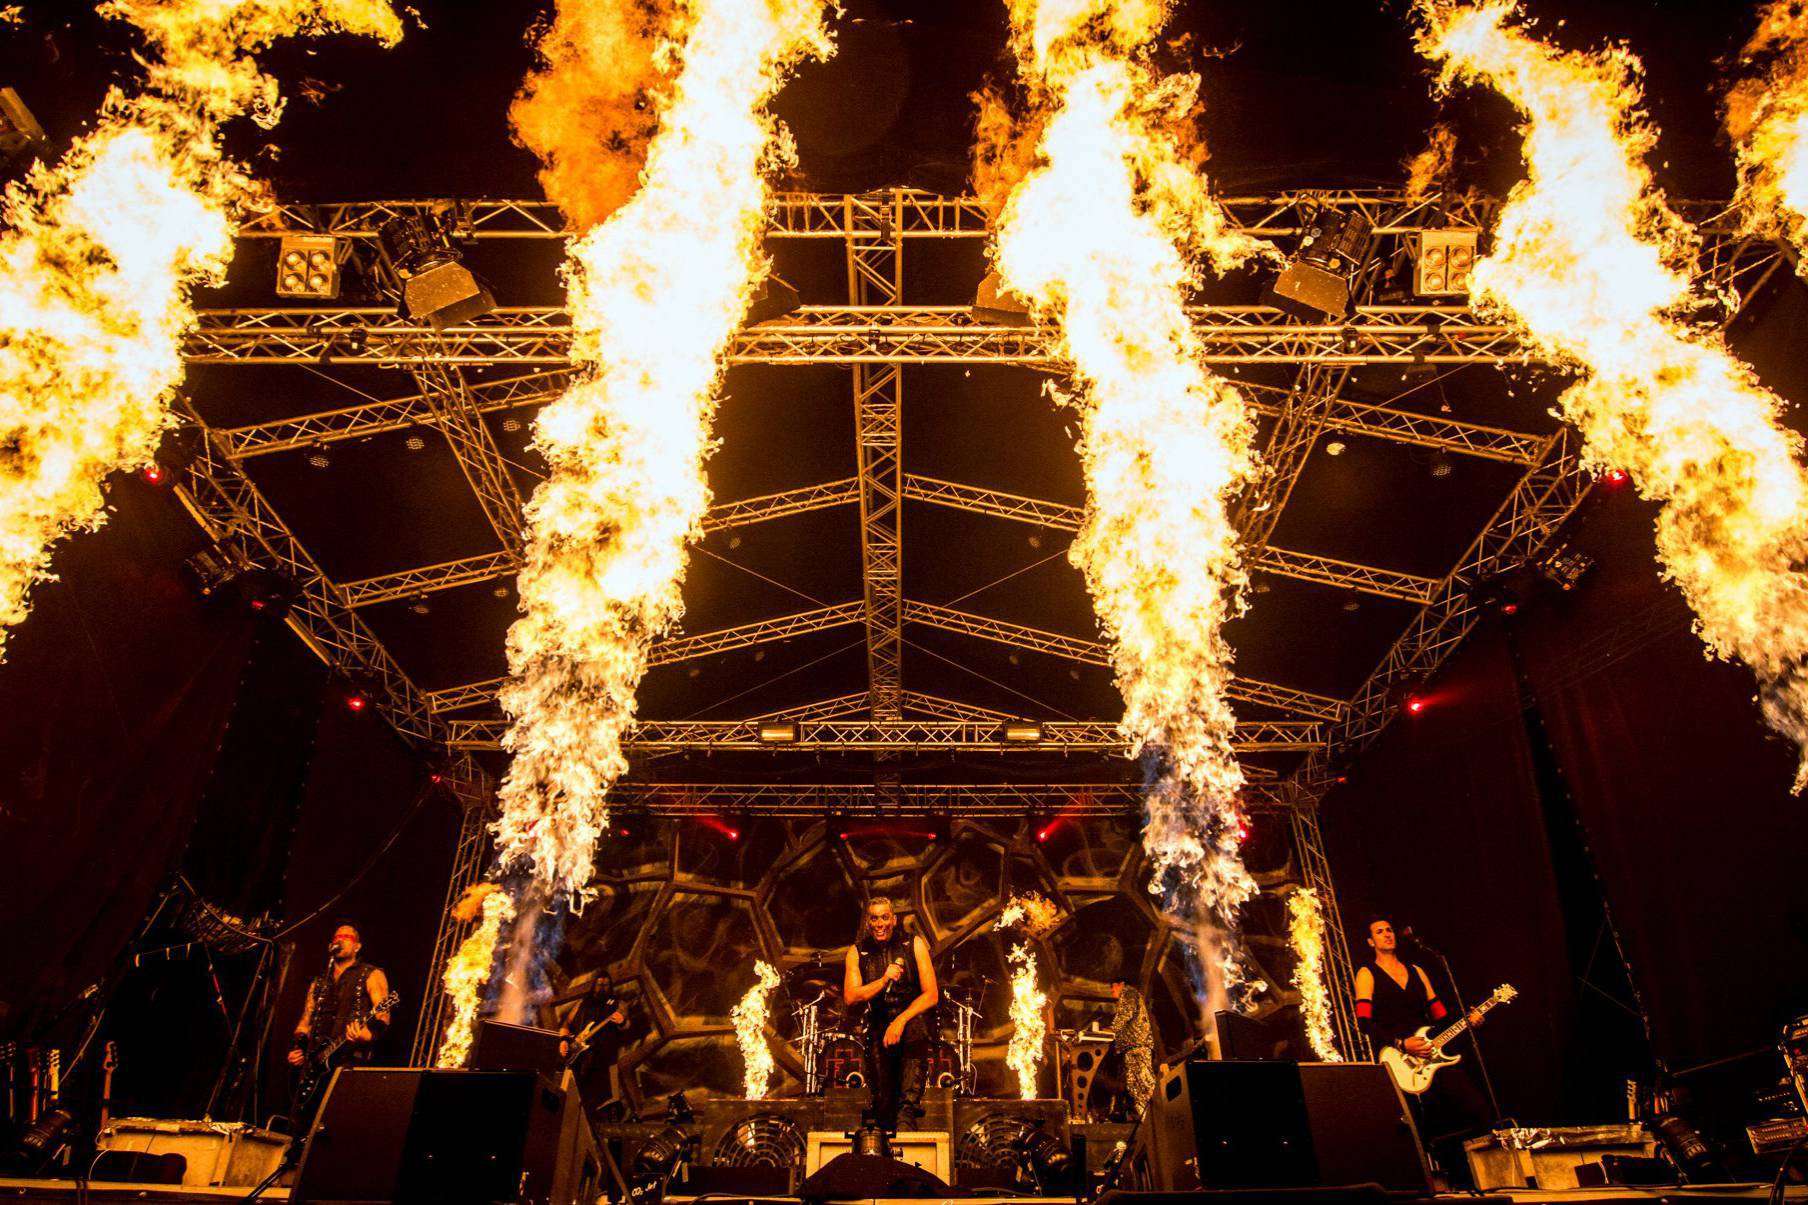 Die Rammstein-Cover-Band Feuerengel spielt nicht nur nahe am Original u2013 sie bietet auch eine pyrotechnische Show 